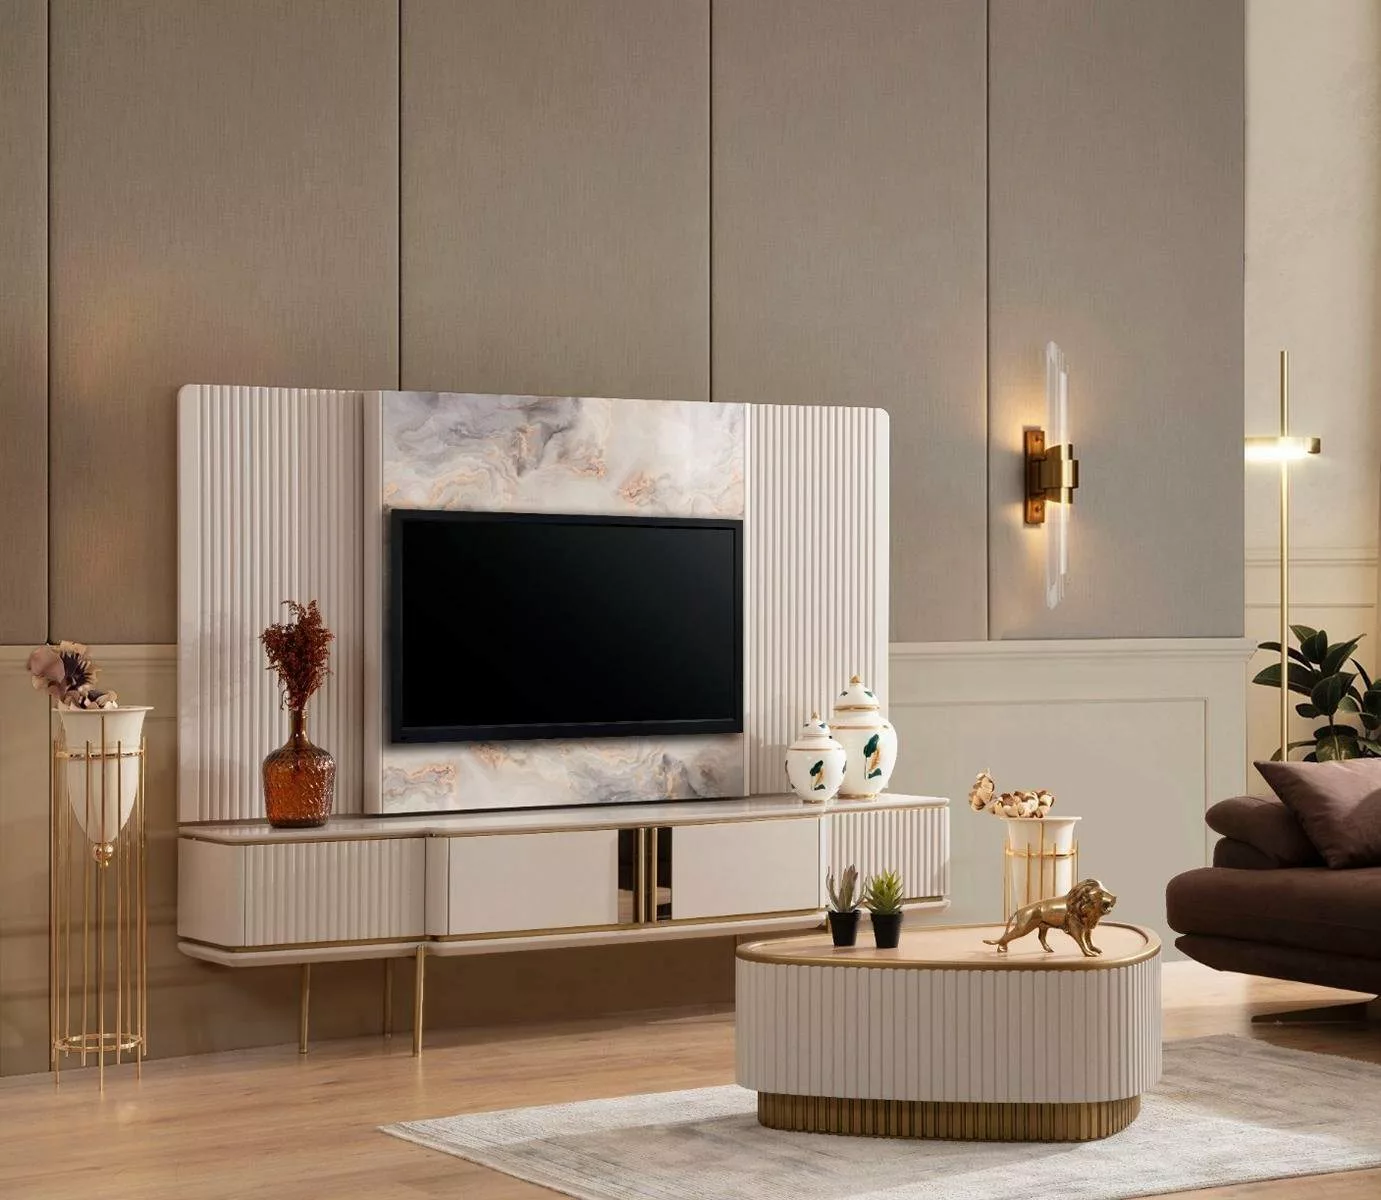 JVmoebel TV-Schrank Weißes Lowboard Mit TV-Rahmen Wohnzimmer Designer Möbel günstig online kaufen